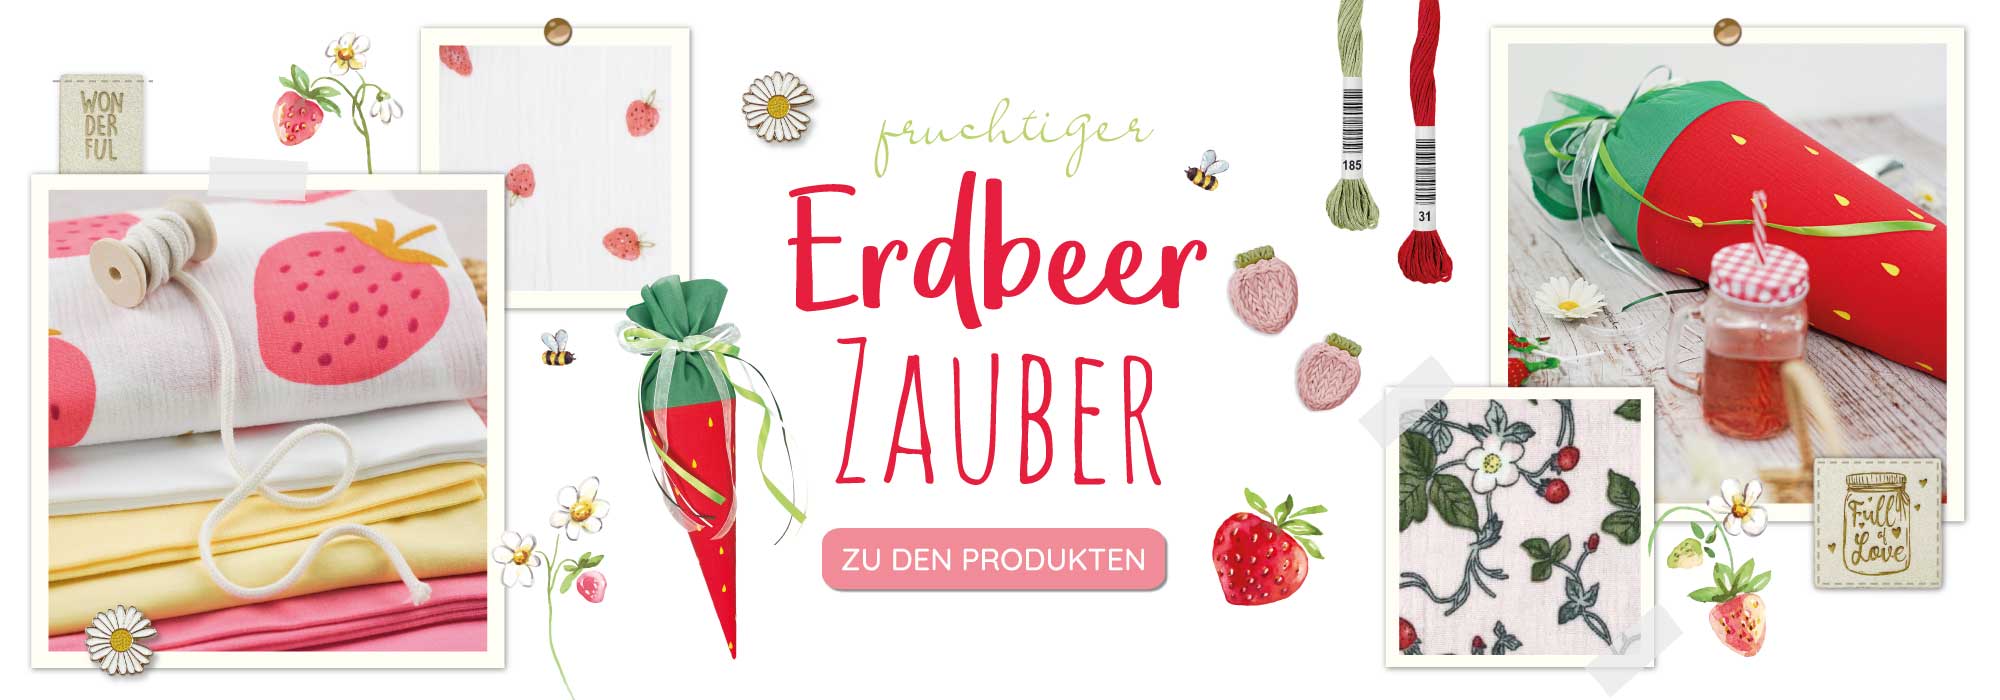 Banner Shop The Look Erdbeer Zauber